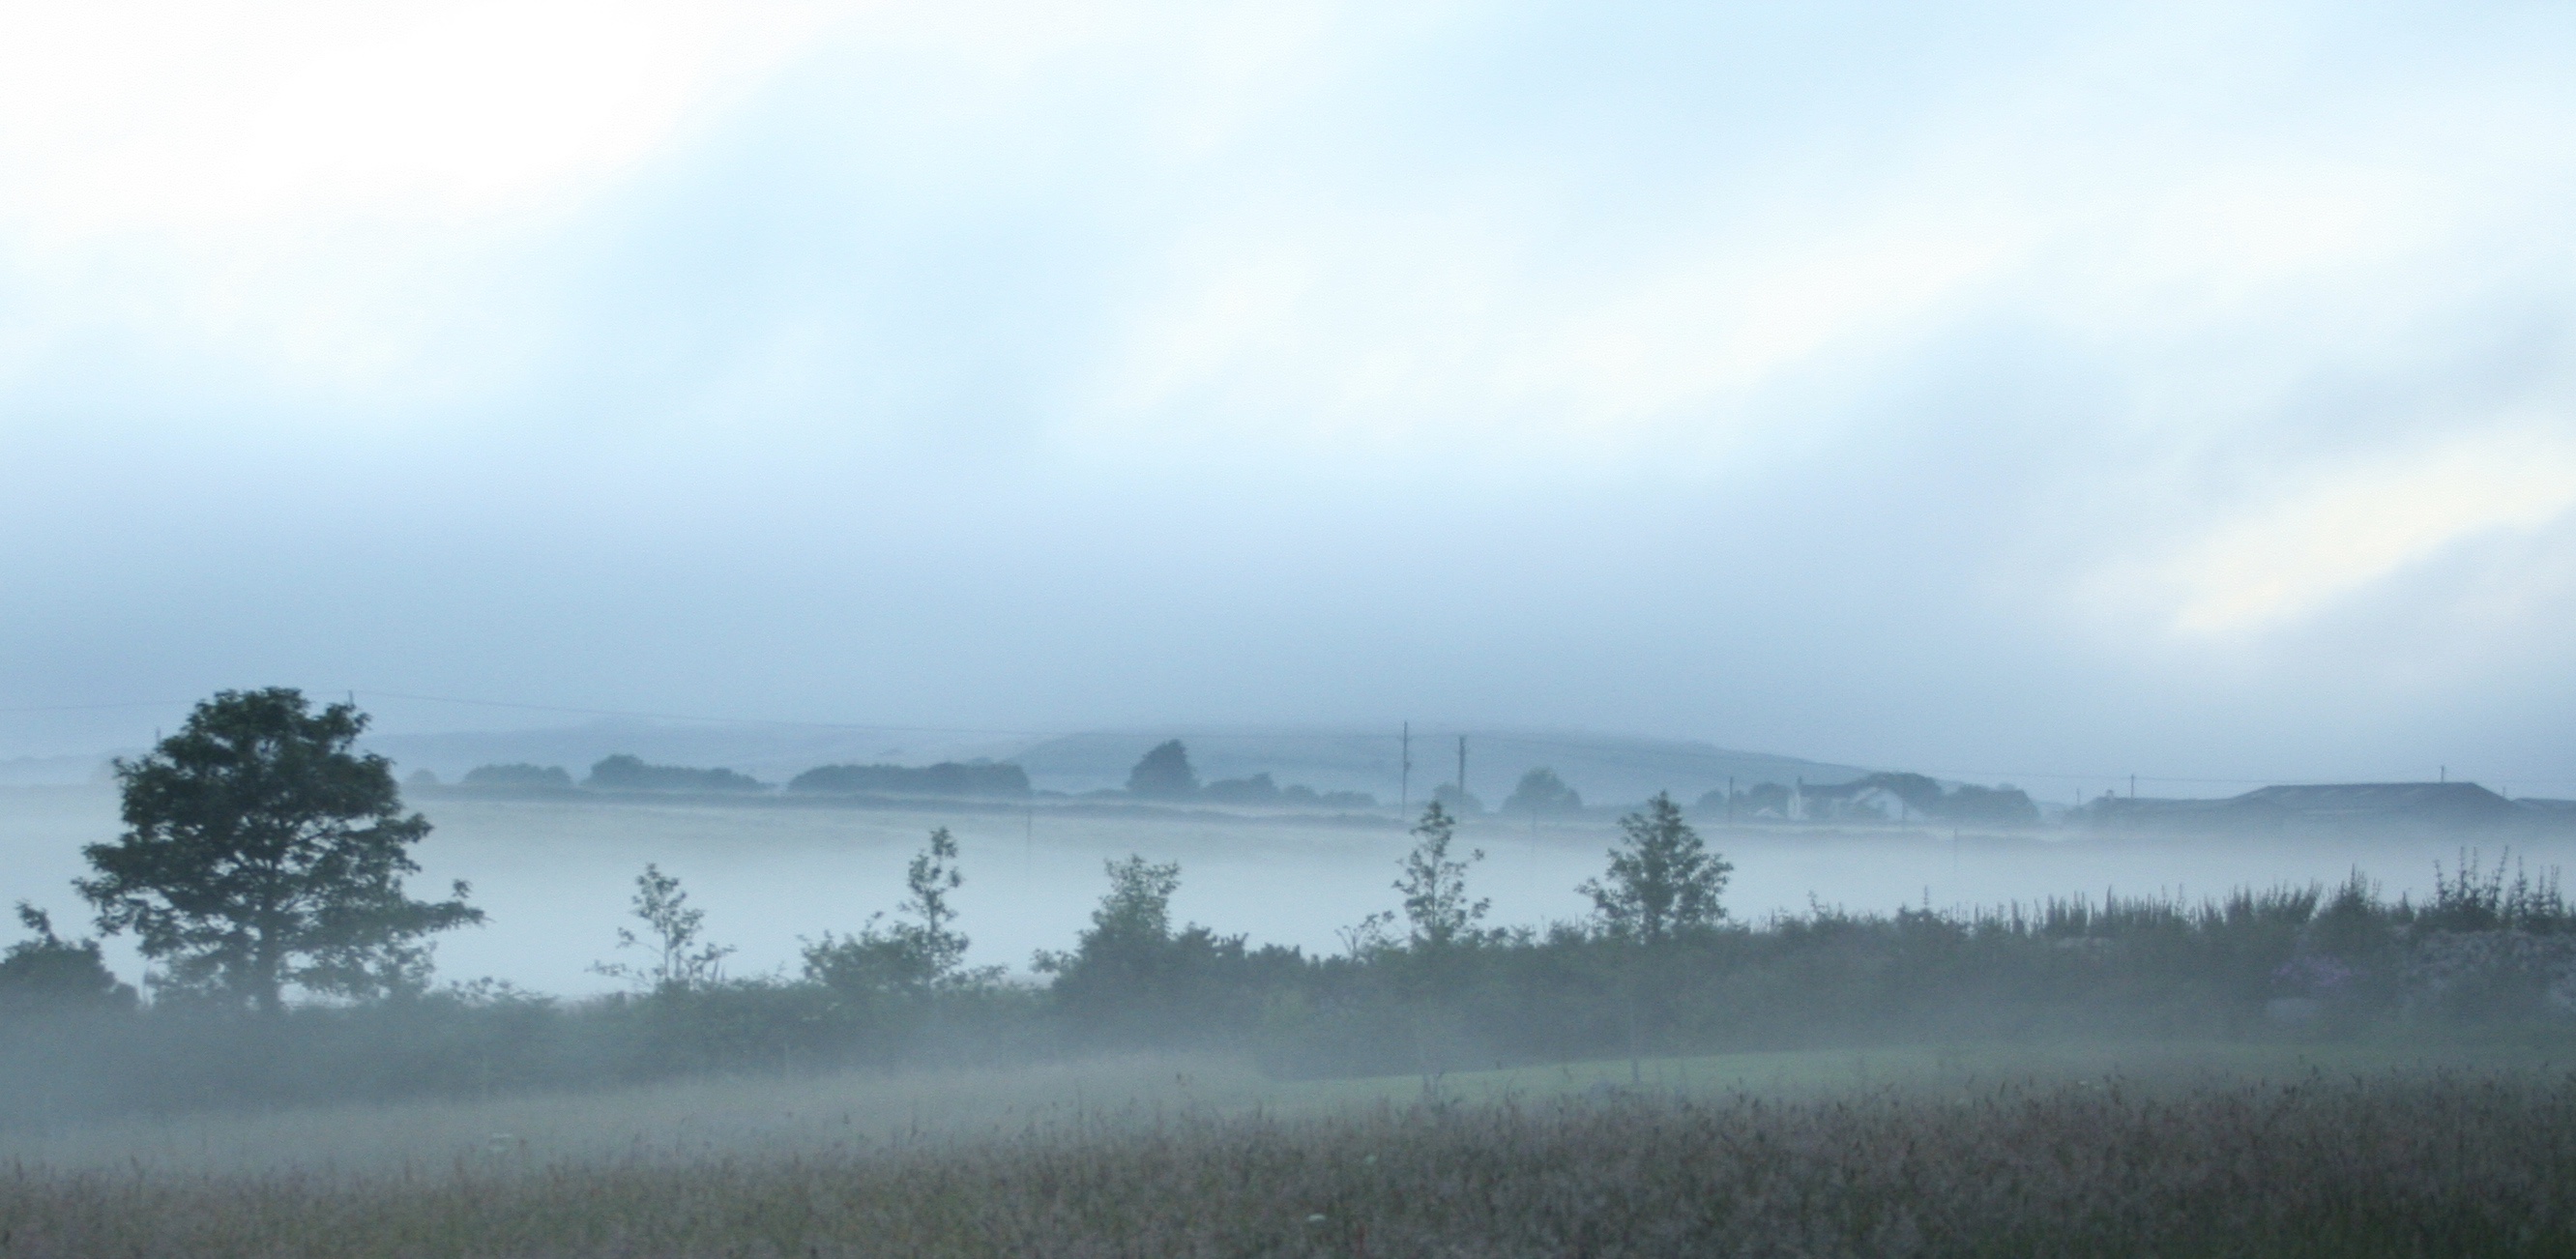 Mist at dawn